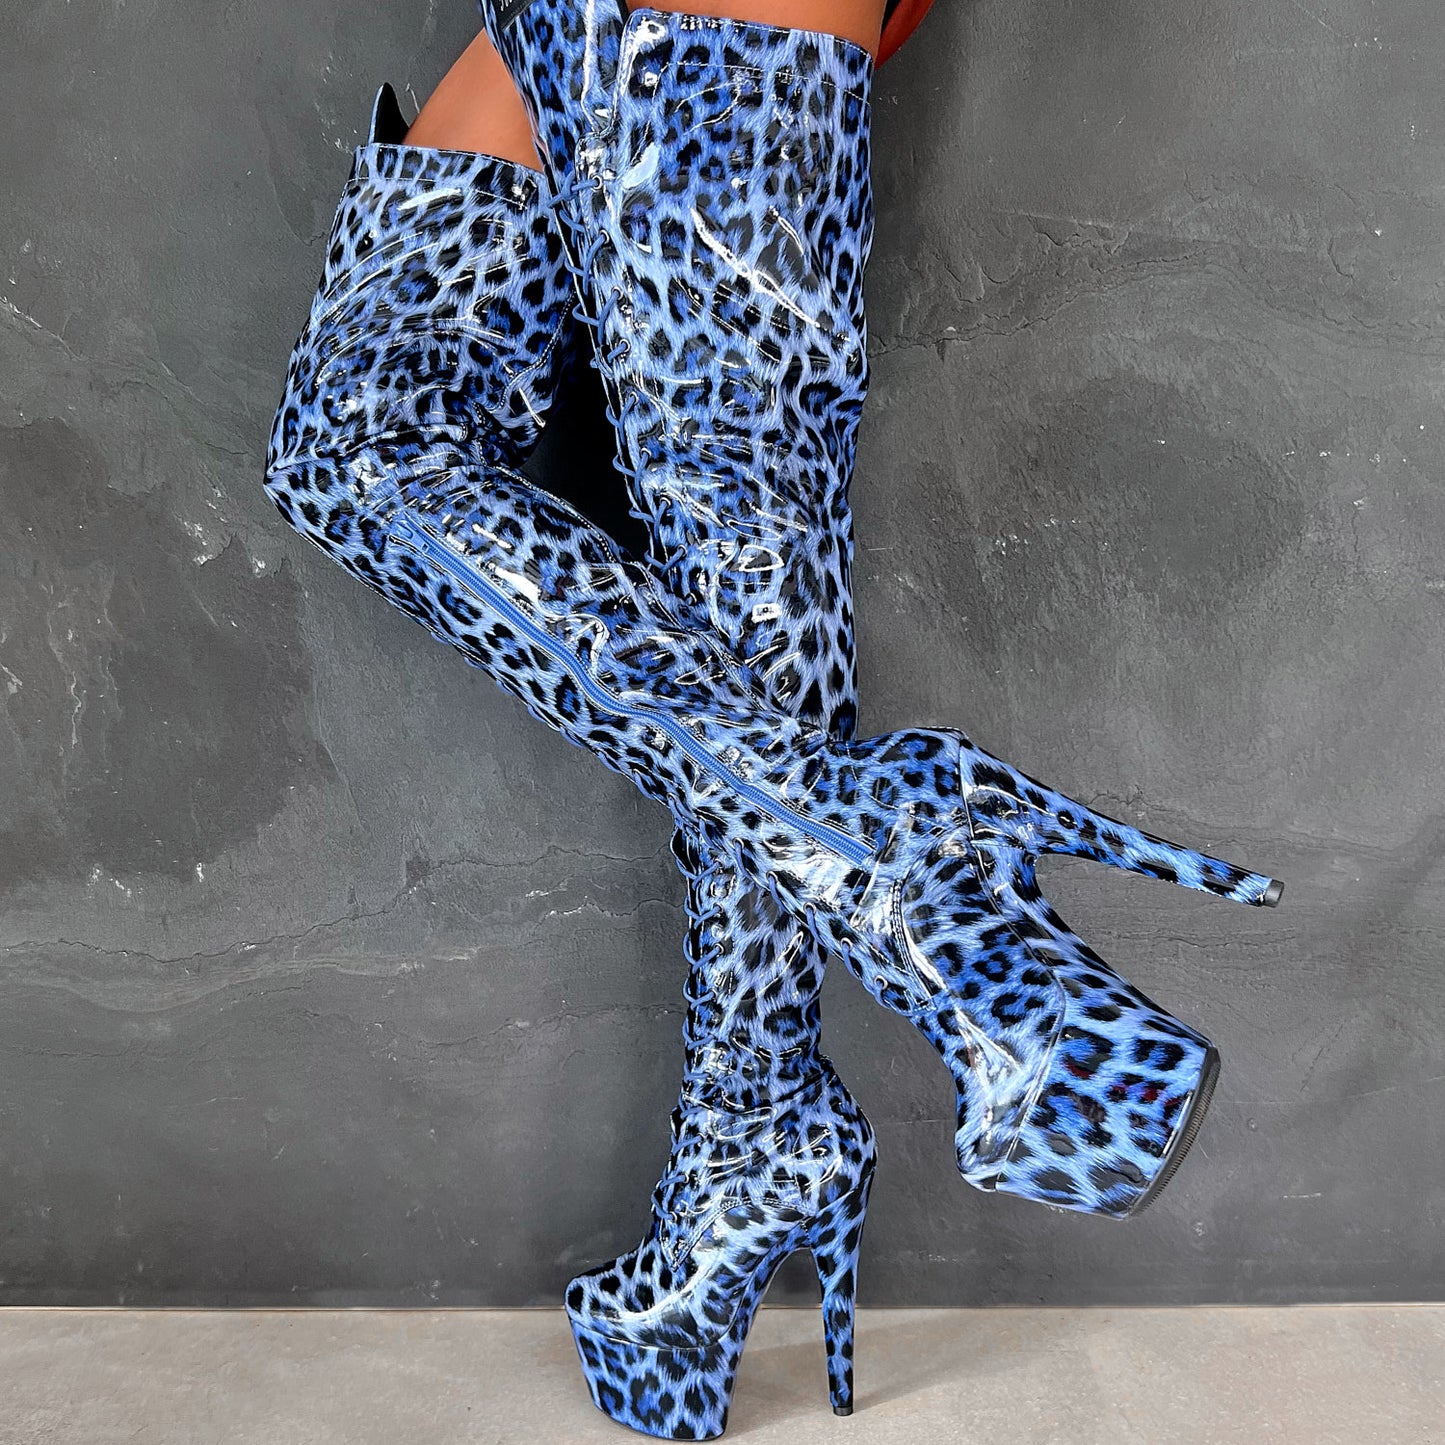 Blue Leopard Thigh High - 7 INCH + SP, stripper shoe, stripper heel, pole heel, not a pleaser, platform, dancer, pole dance, floor work